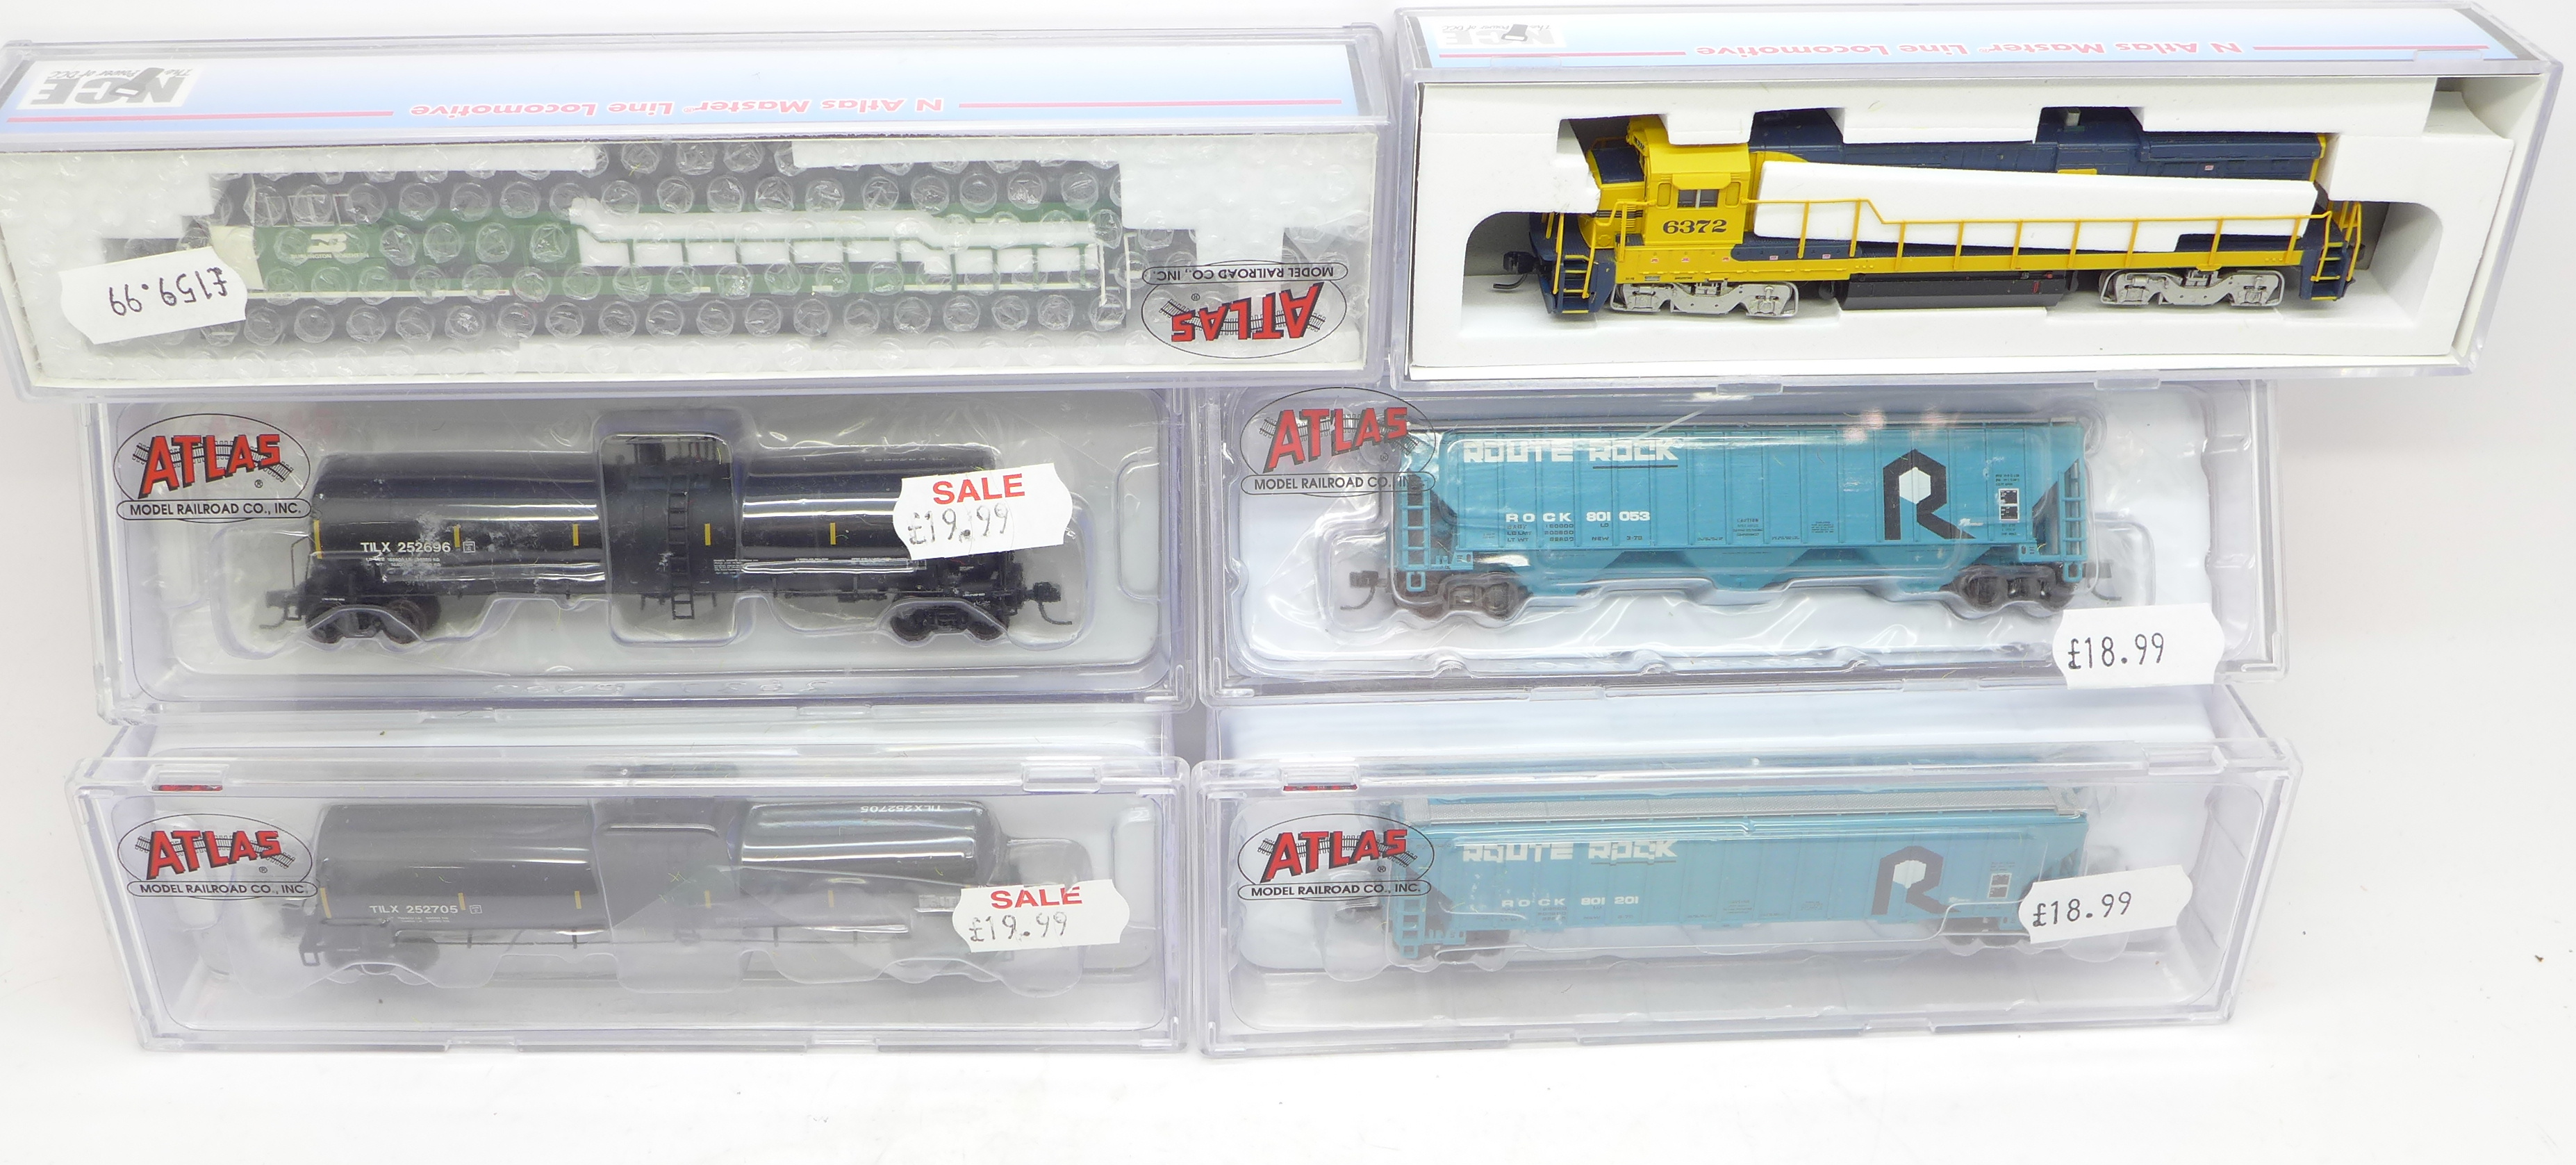 Atlas N gauge model rail, boxed